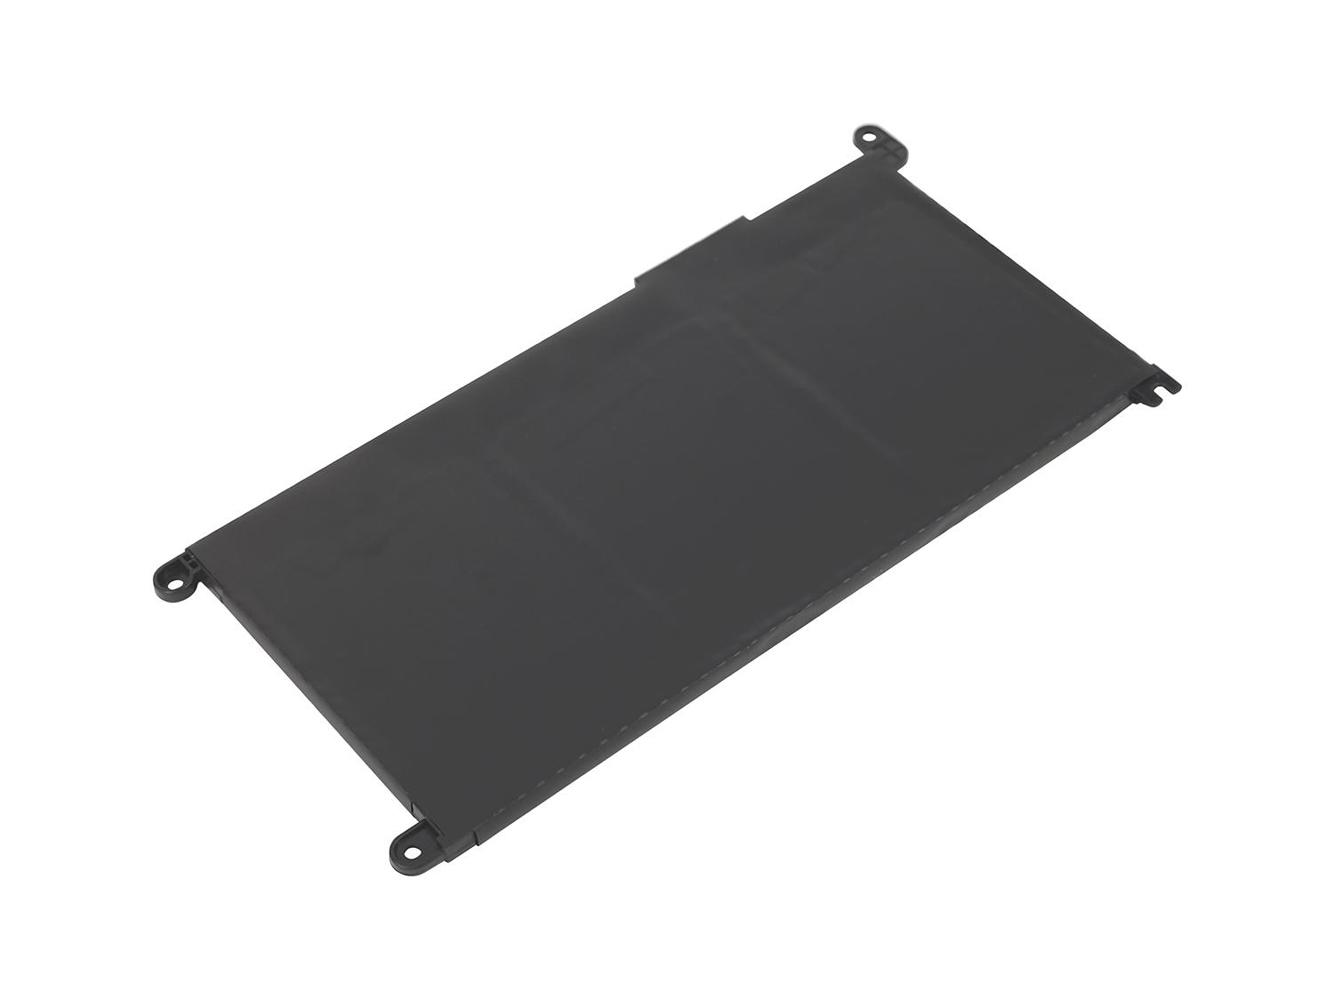 Remplacement compatible pour batterie d'ordinateur portable Dell Inspiron 14 5485, Inspiron 14 5485 2-en-1